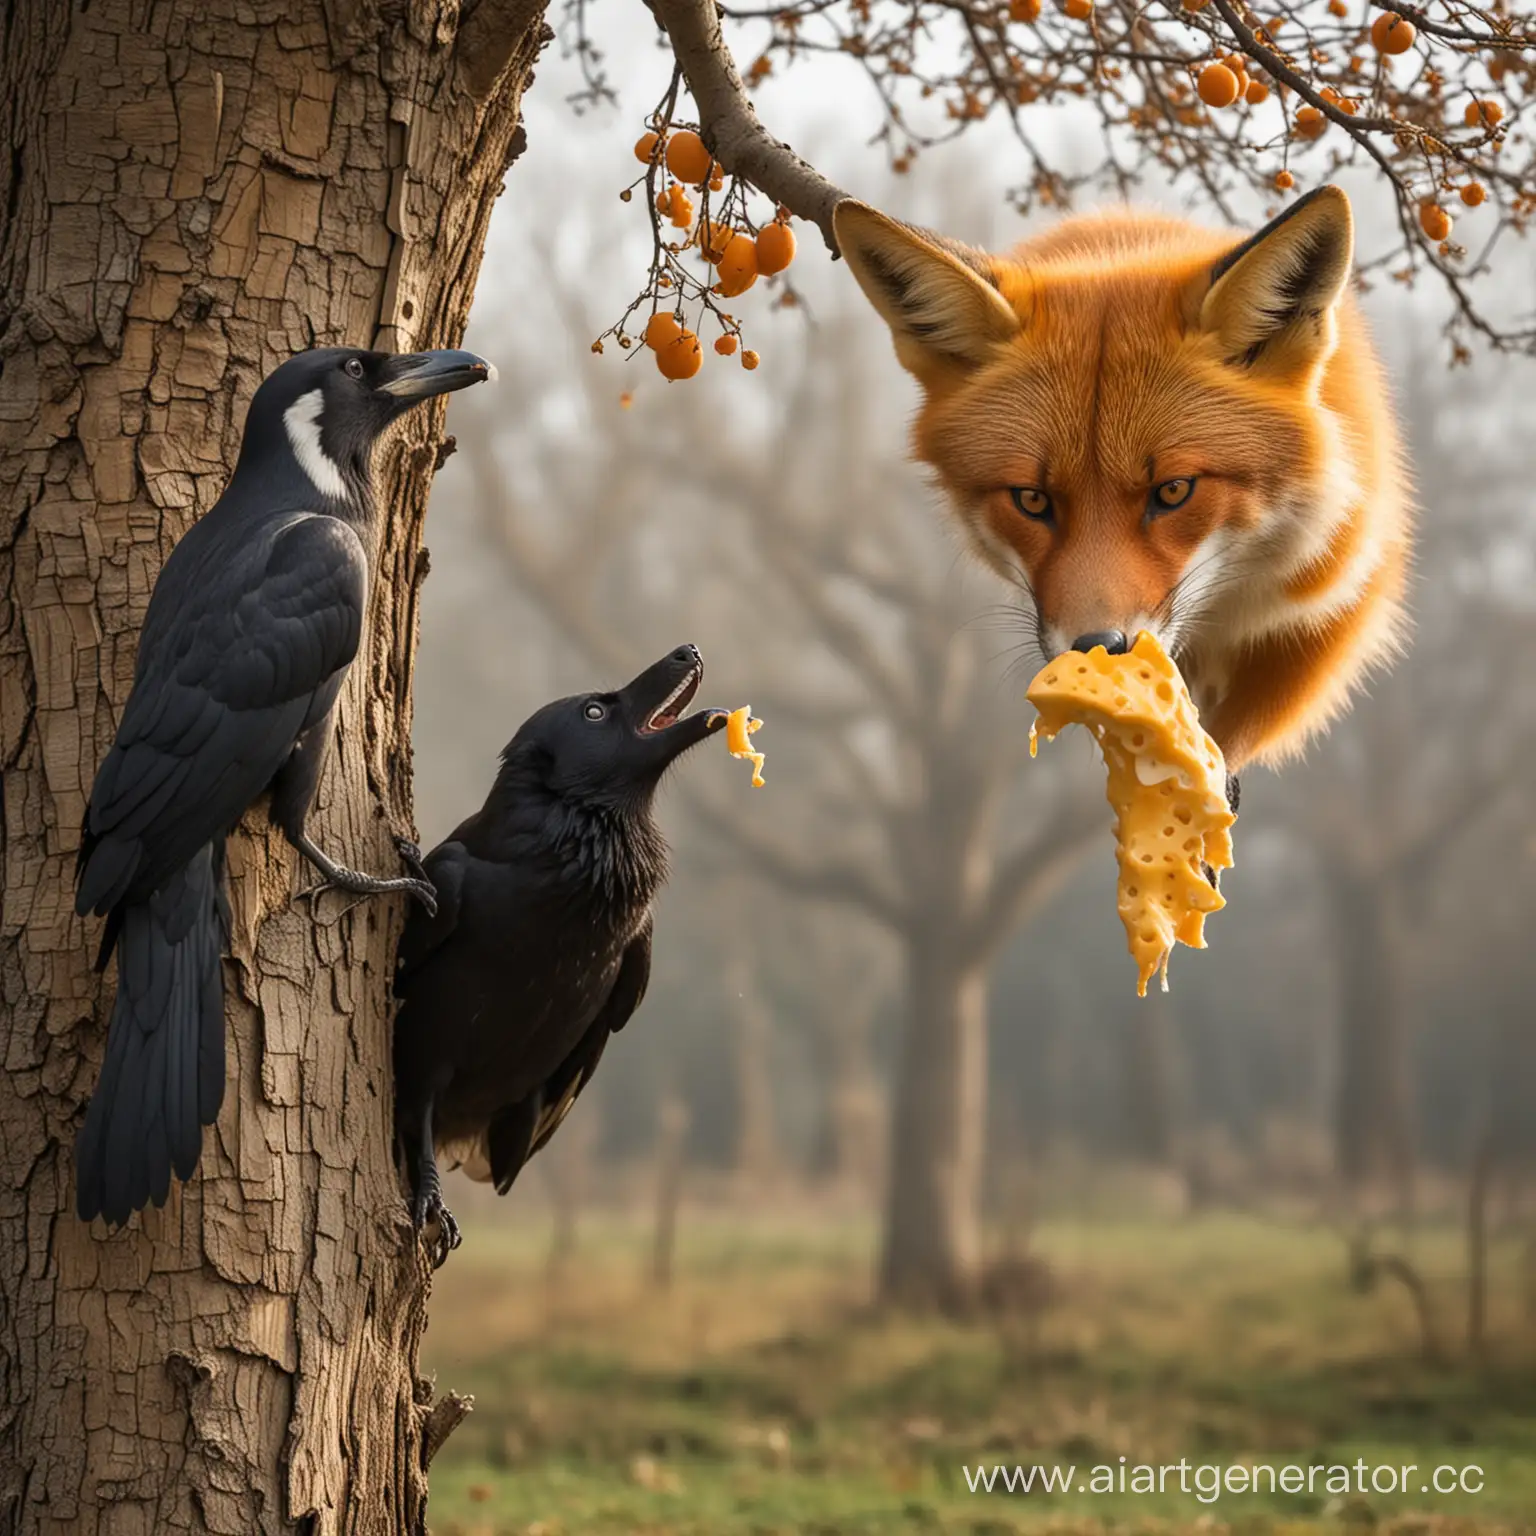 ворона на дереве держит сыр в клюве и под деревом стоит лиса